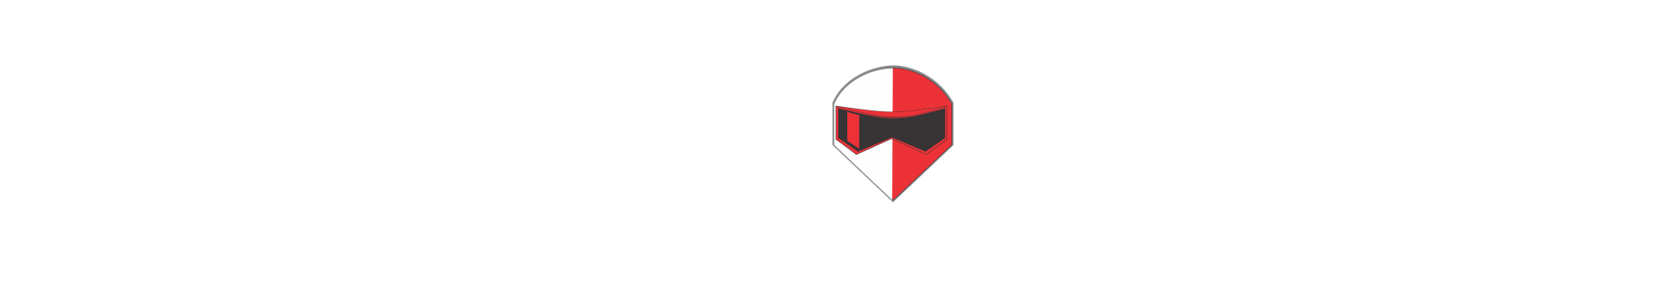 Mineiro Moto Peças